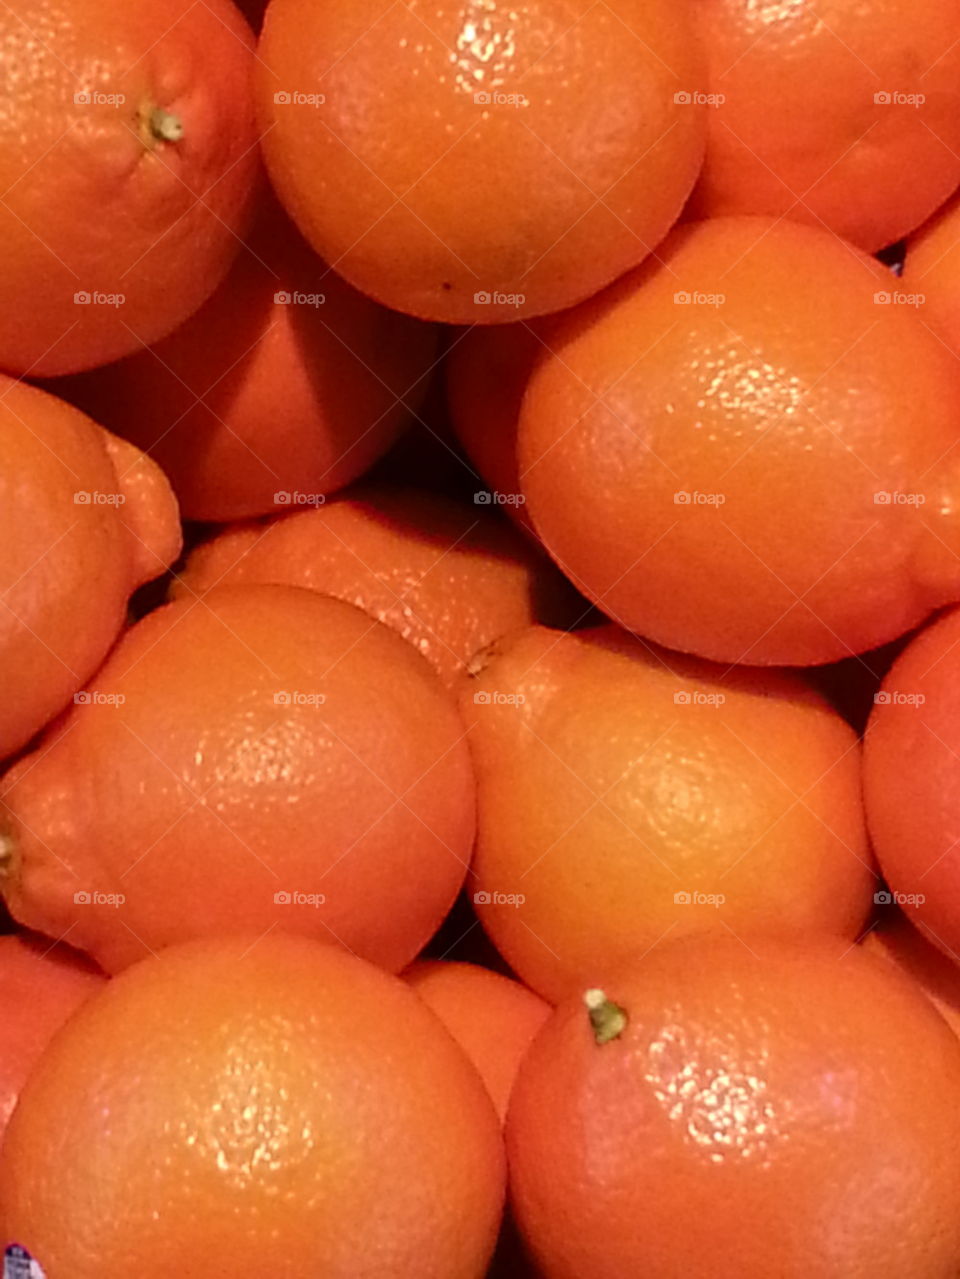 Oranges, orange color